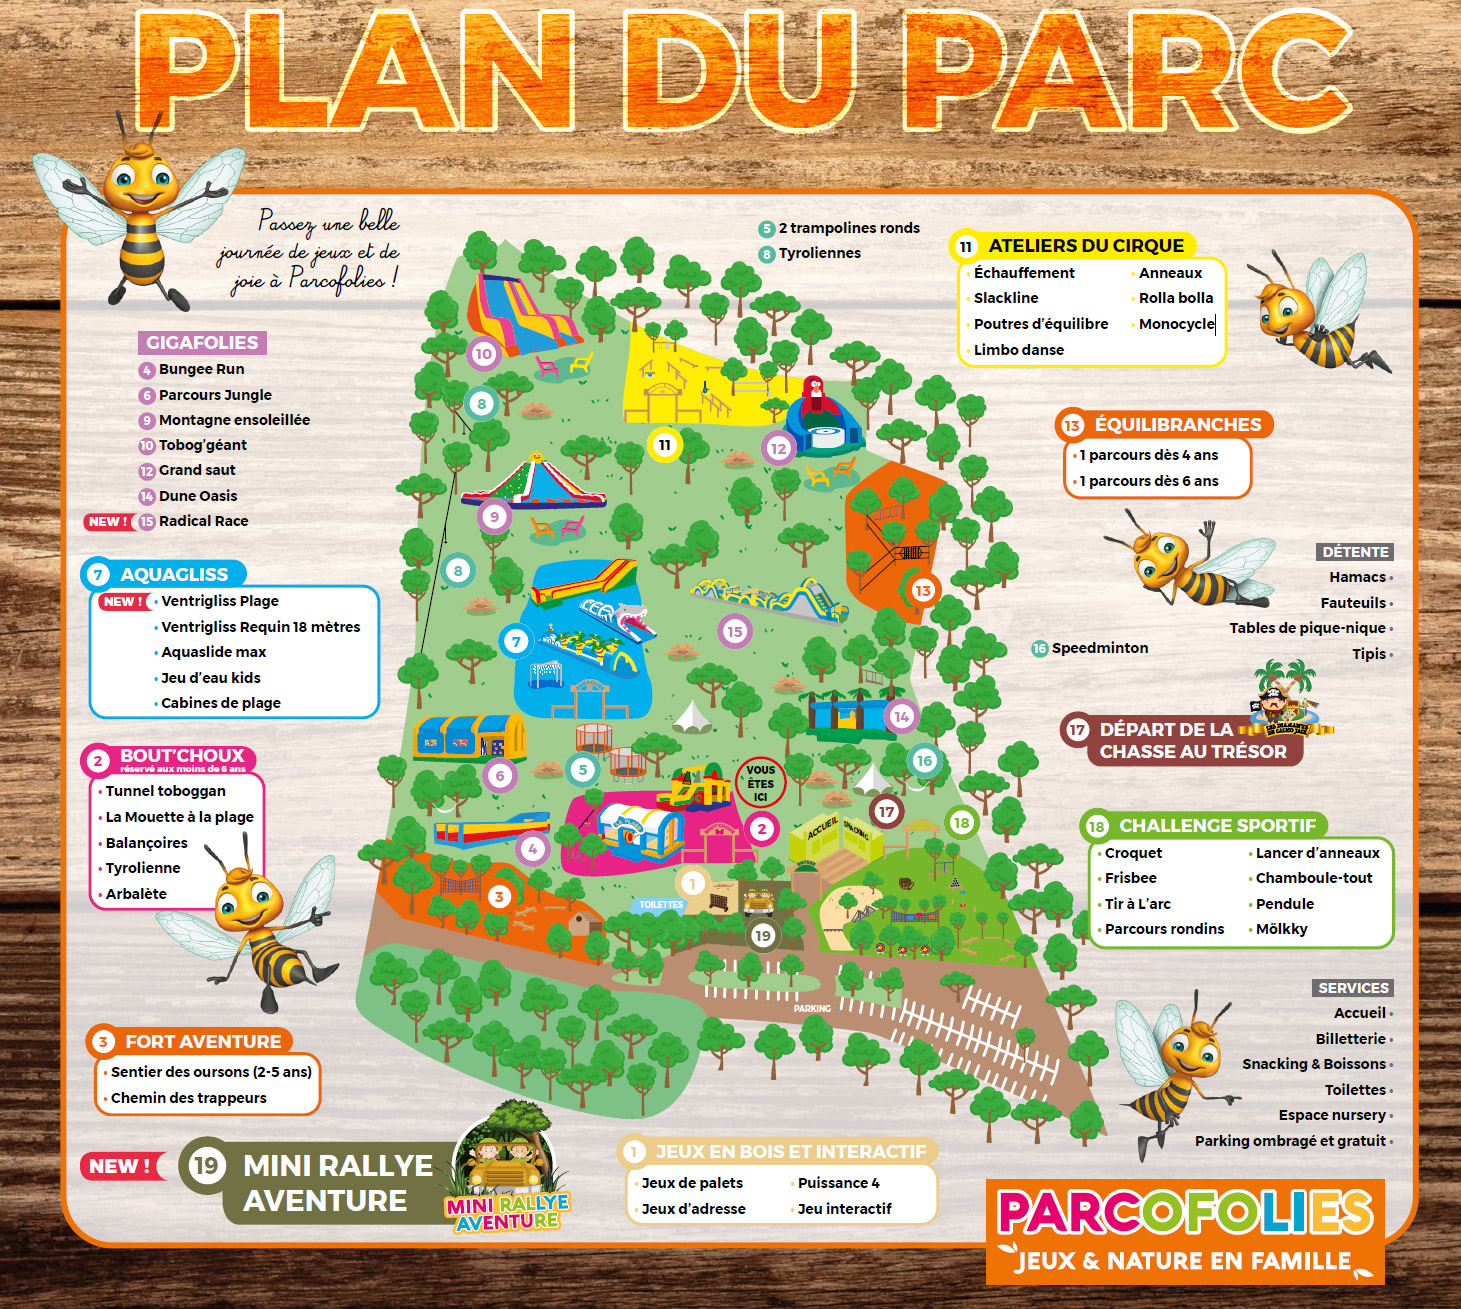 Parc La Baule Tarifs Du Parc Parc De Loisirs Pour Enfants La Baule | My ...